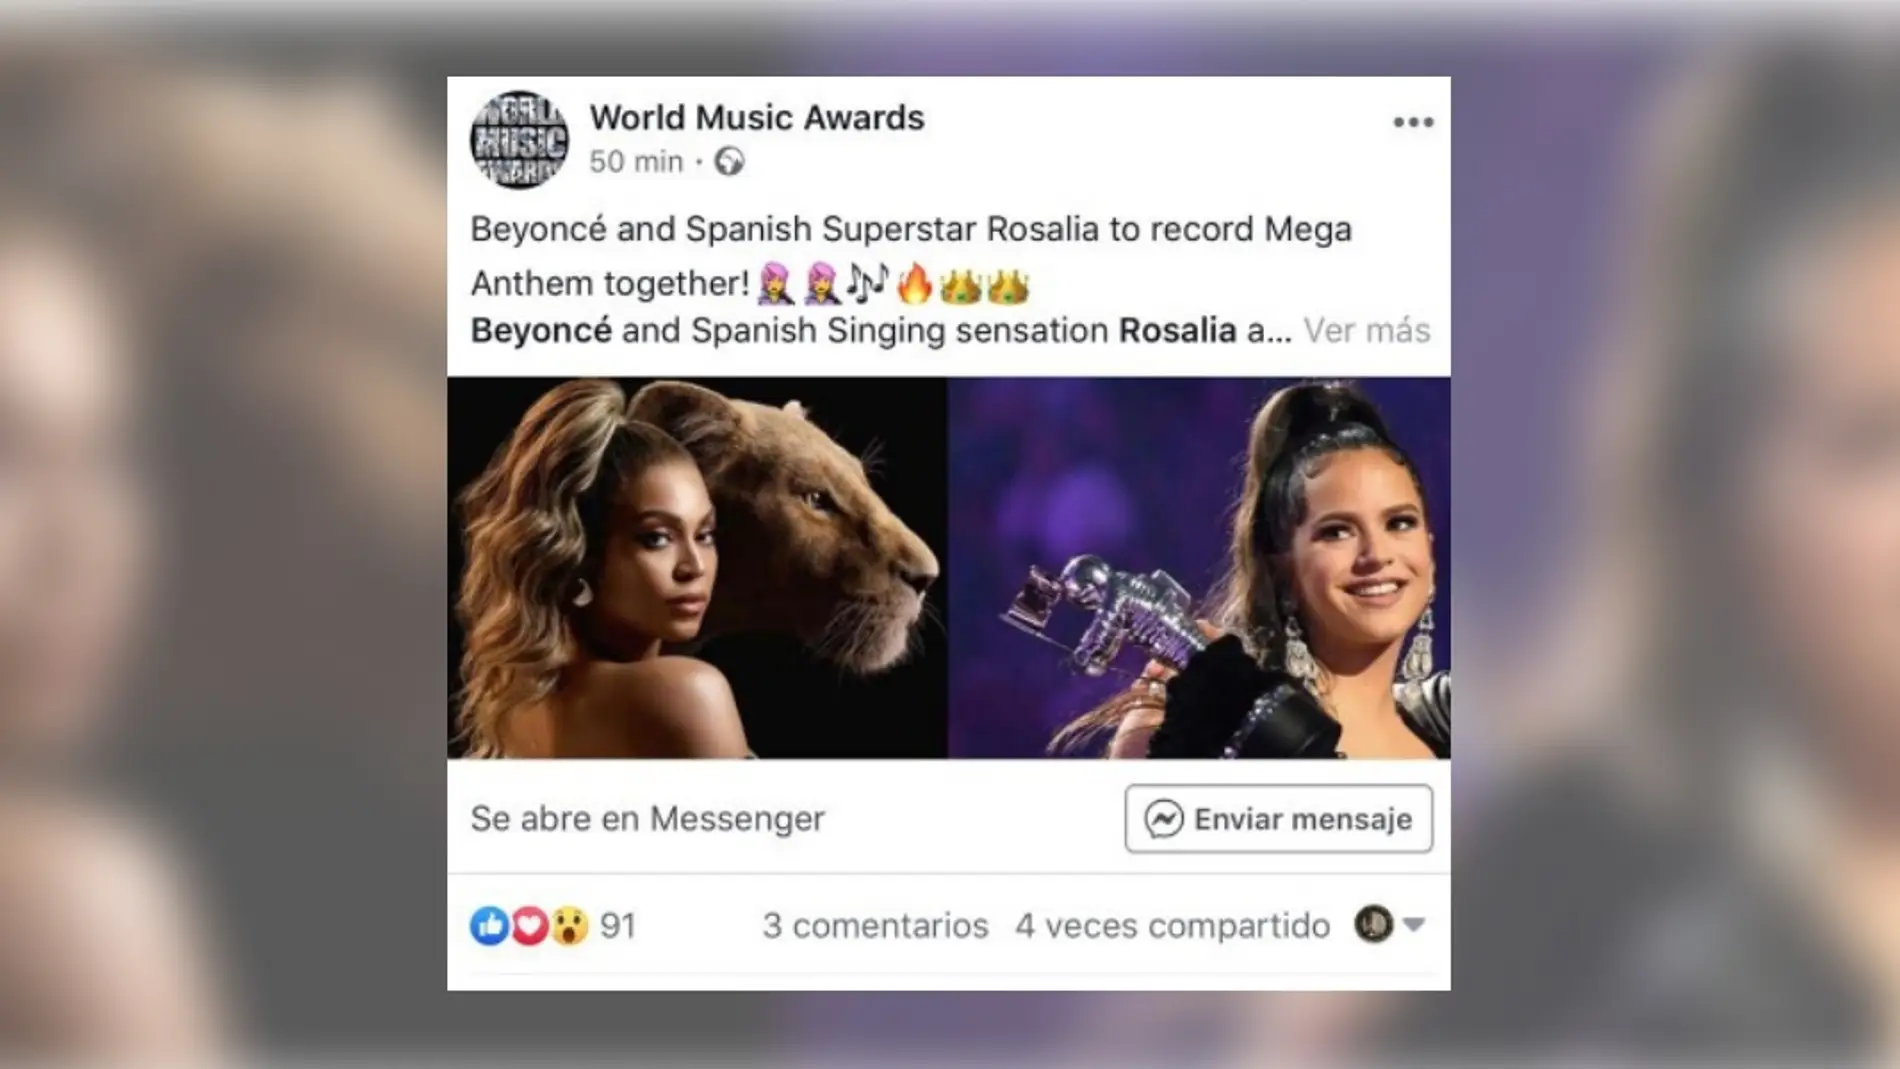 ¿Están preparando juntas Rosalía y Beyoncé el “gran himno” de 2020? title=